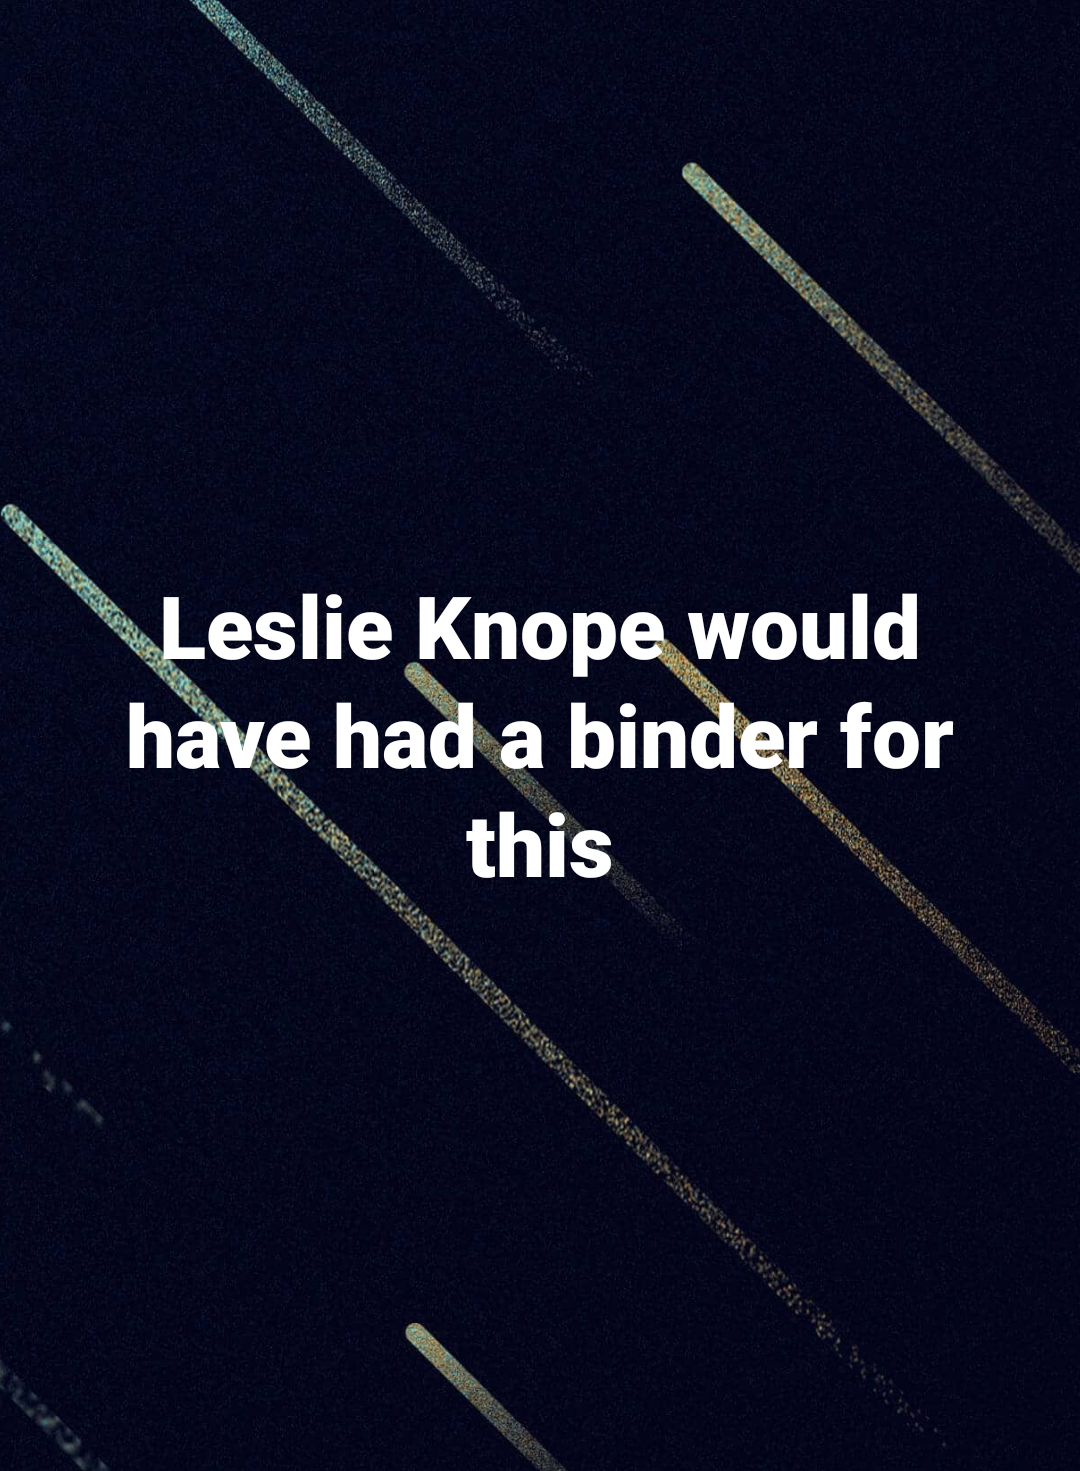 Leslie Knope 2020